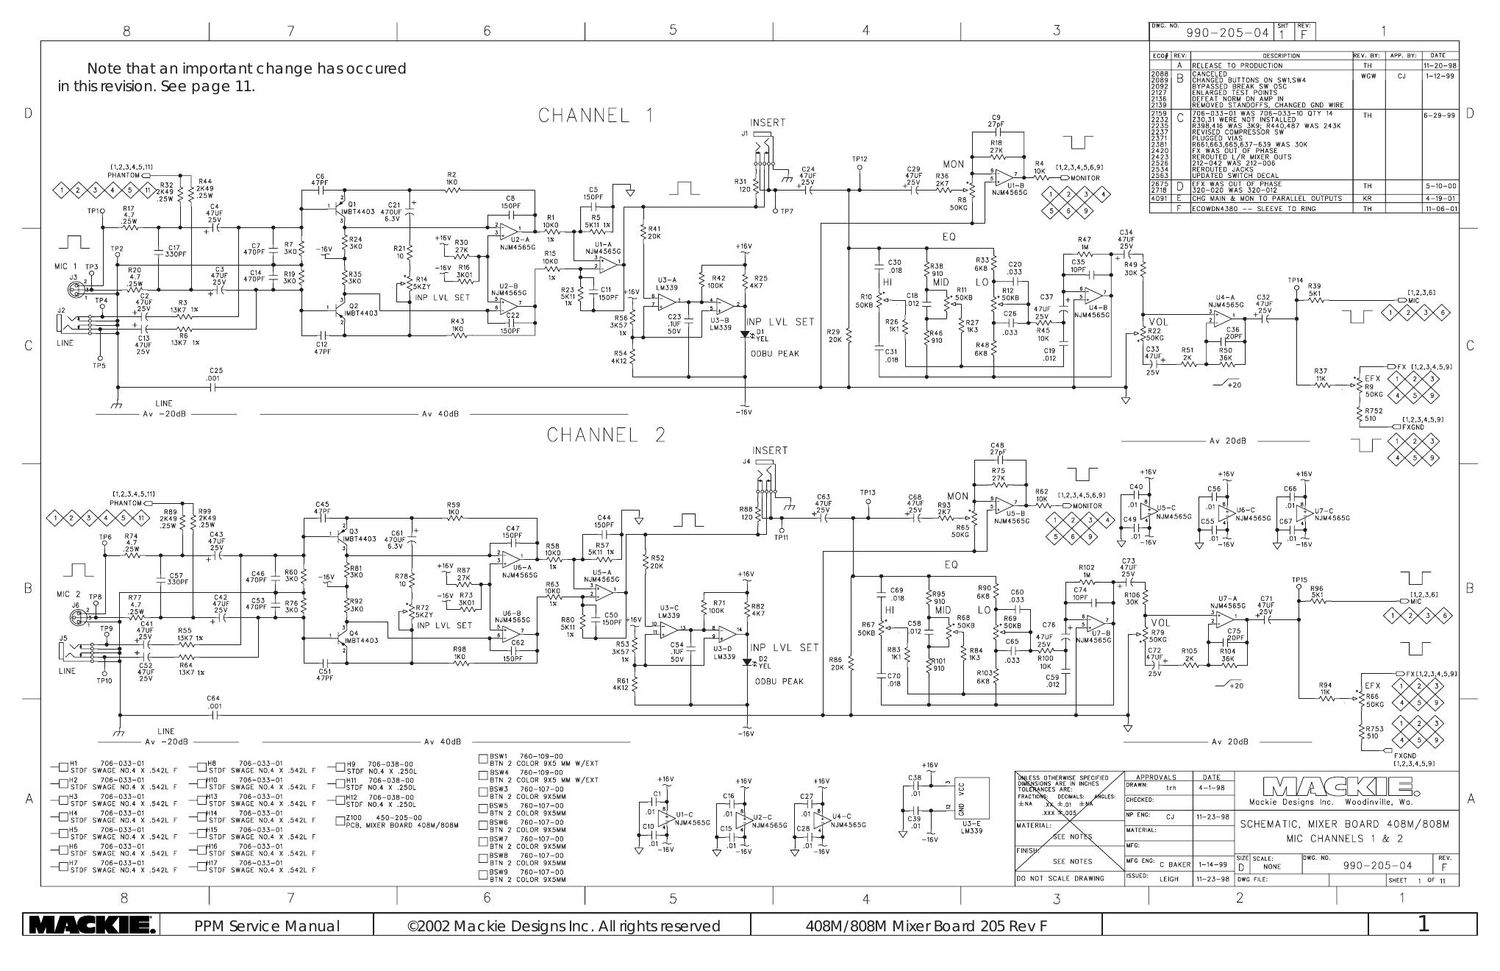 Mackie PPM408M 808M Mixer Board Schematics